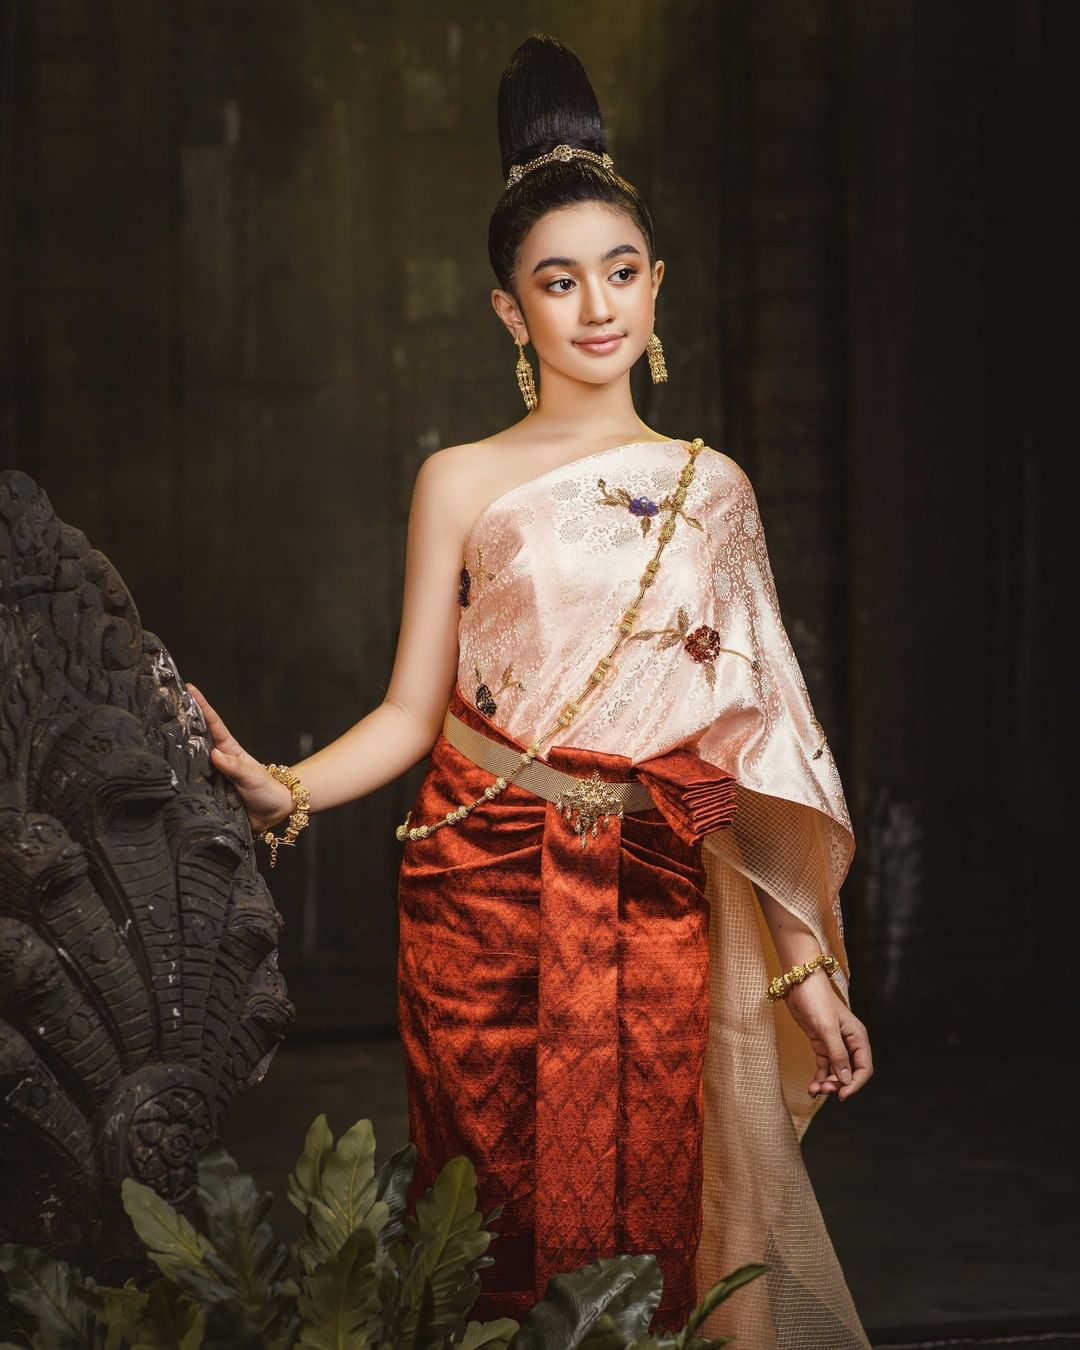 Tiểu công chúa Campuchia mới 10 tuổi đã lộ rõ nét đẹp xứng tầm mỹ nhân - ảnh 26